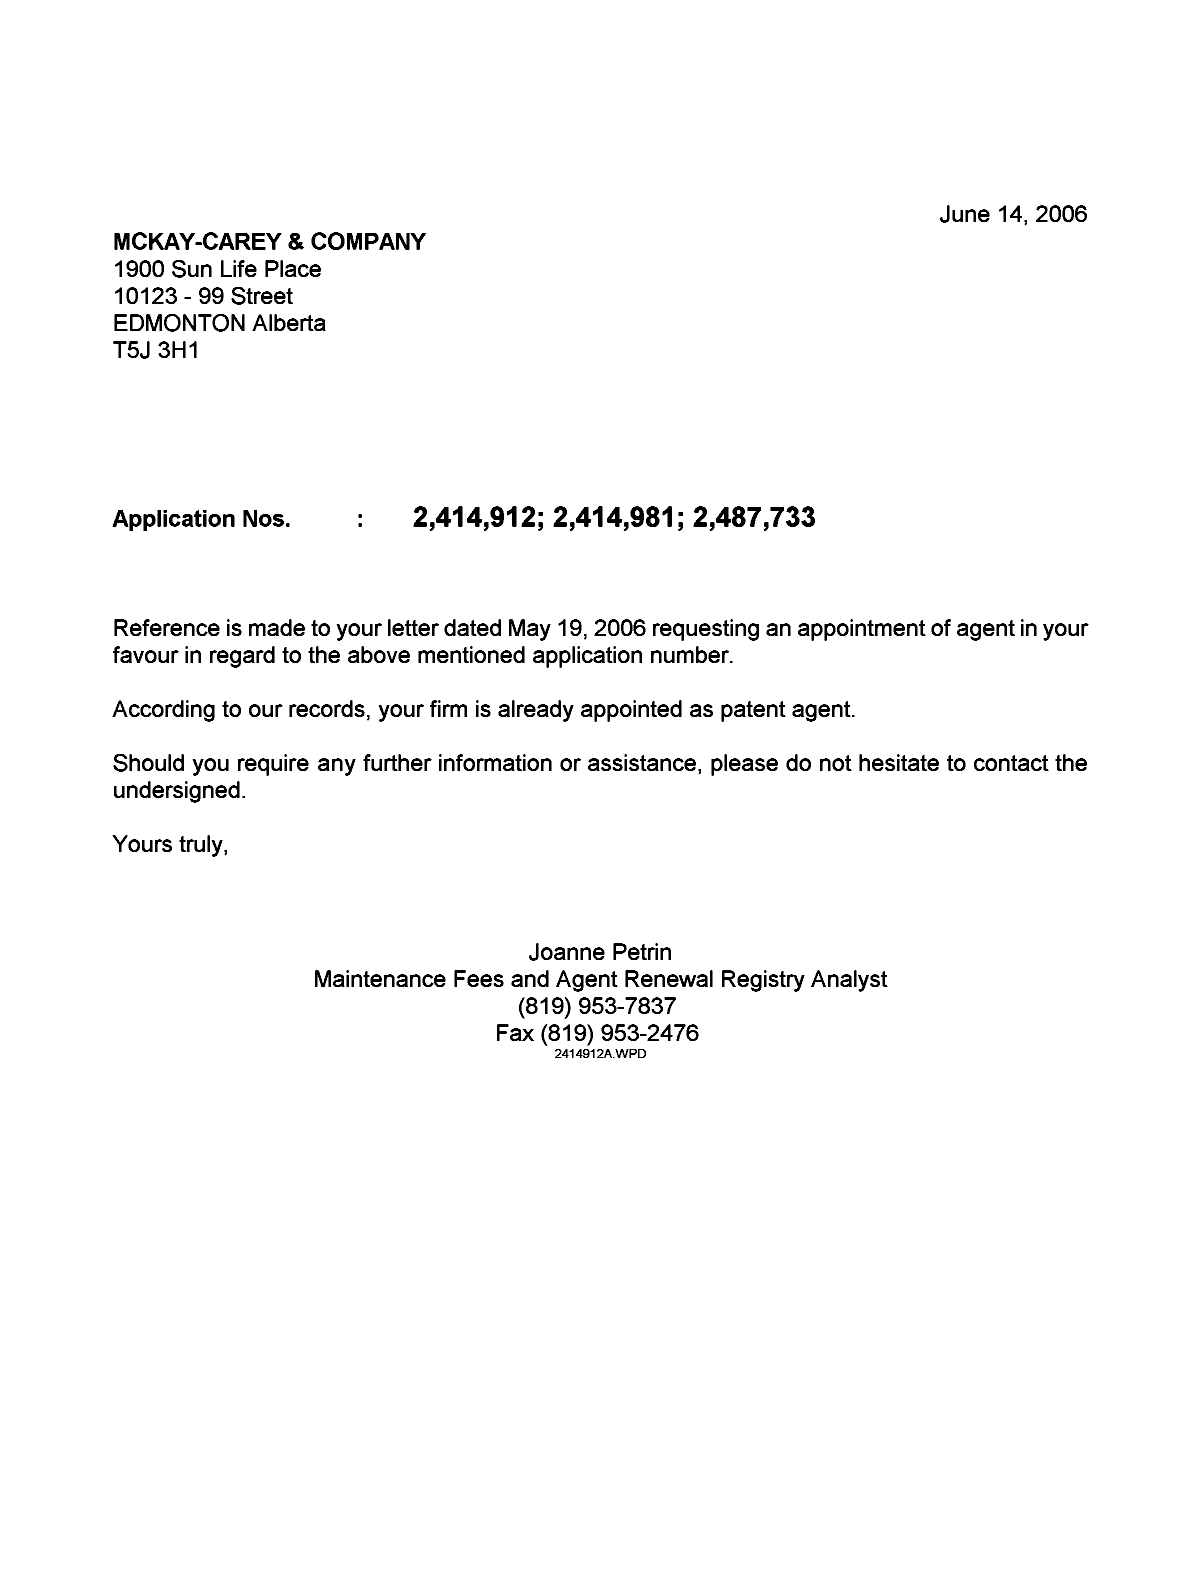 Document de brevet canadien 2487733. Correspondance 20060614. Image 1 de 1